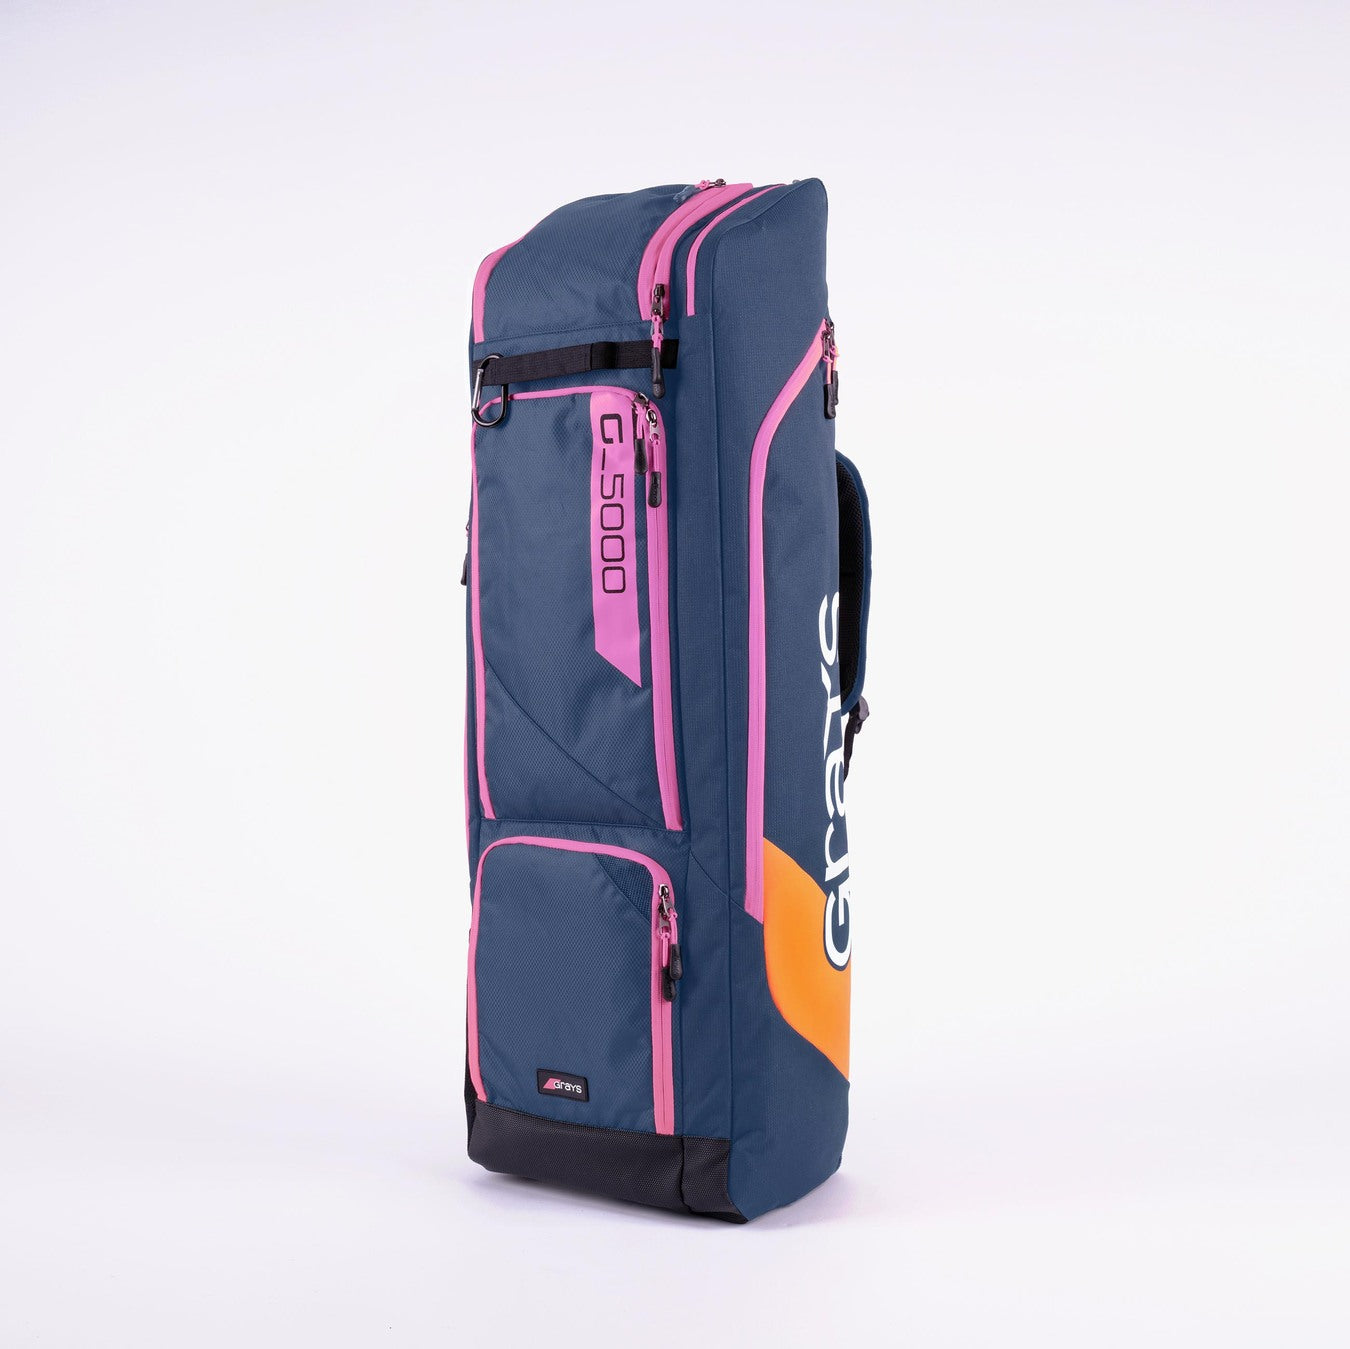 HHCA22Bags Kitbag G5000 Navy Pink Front